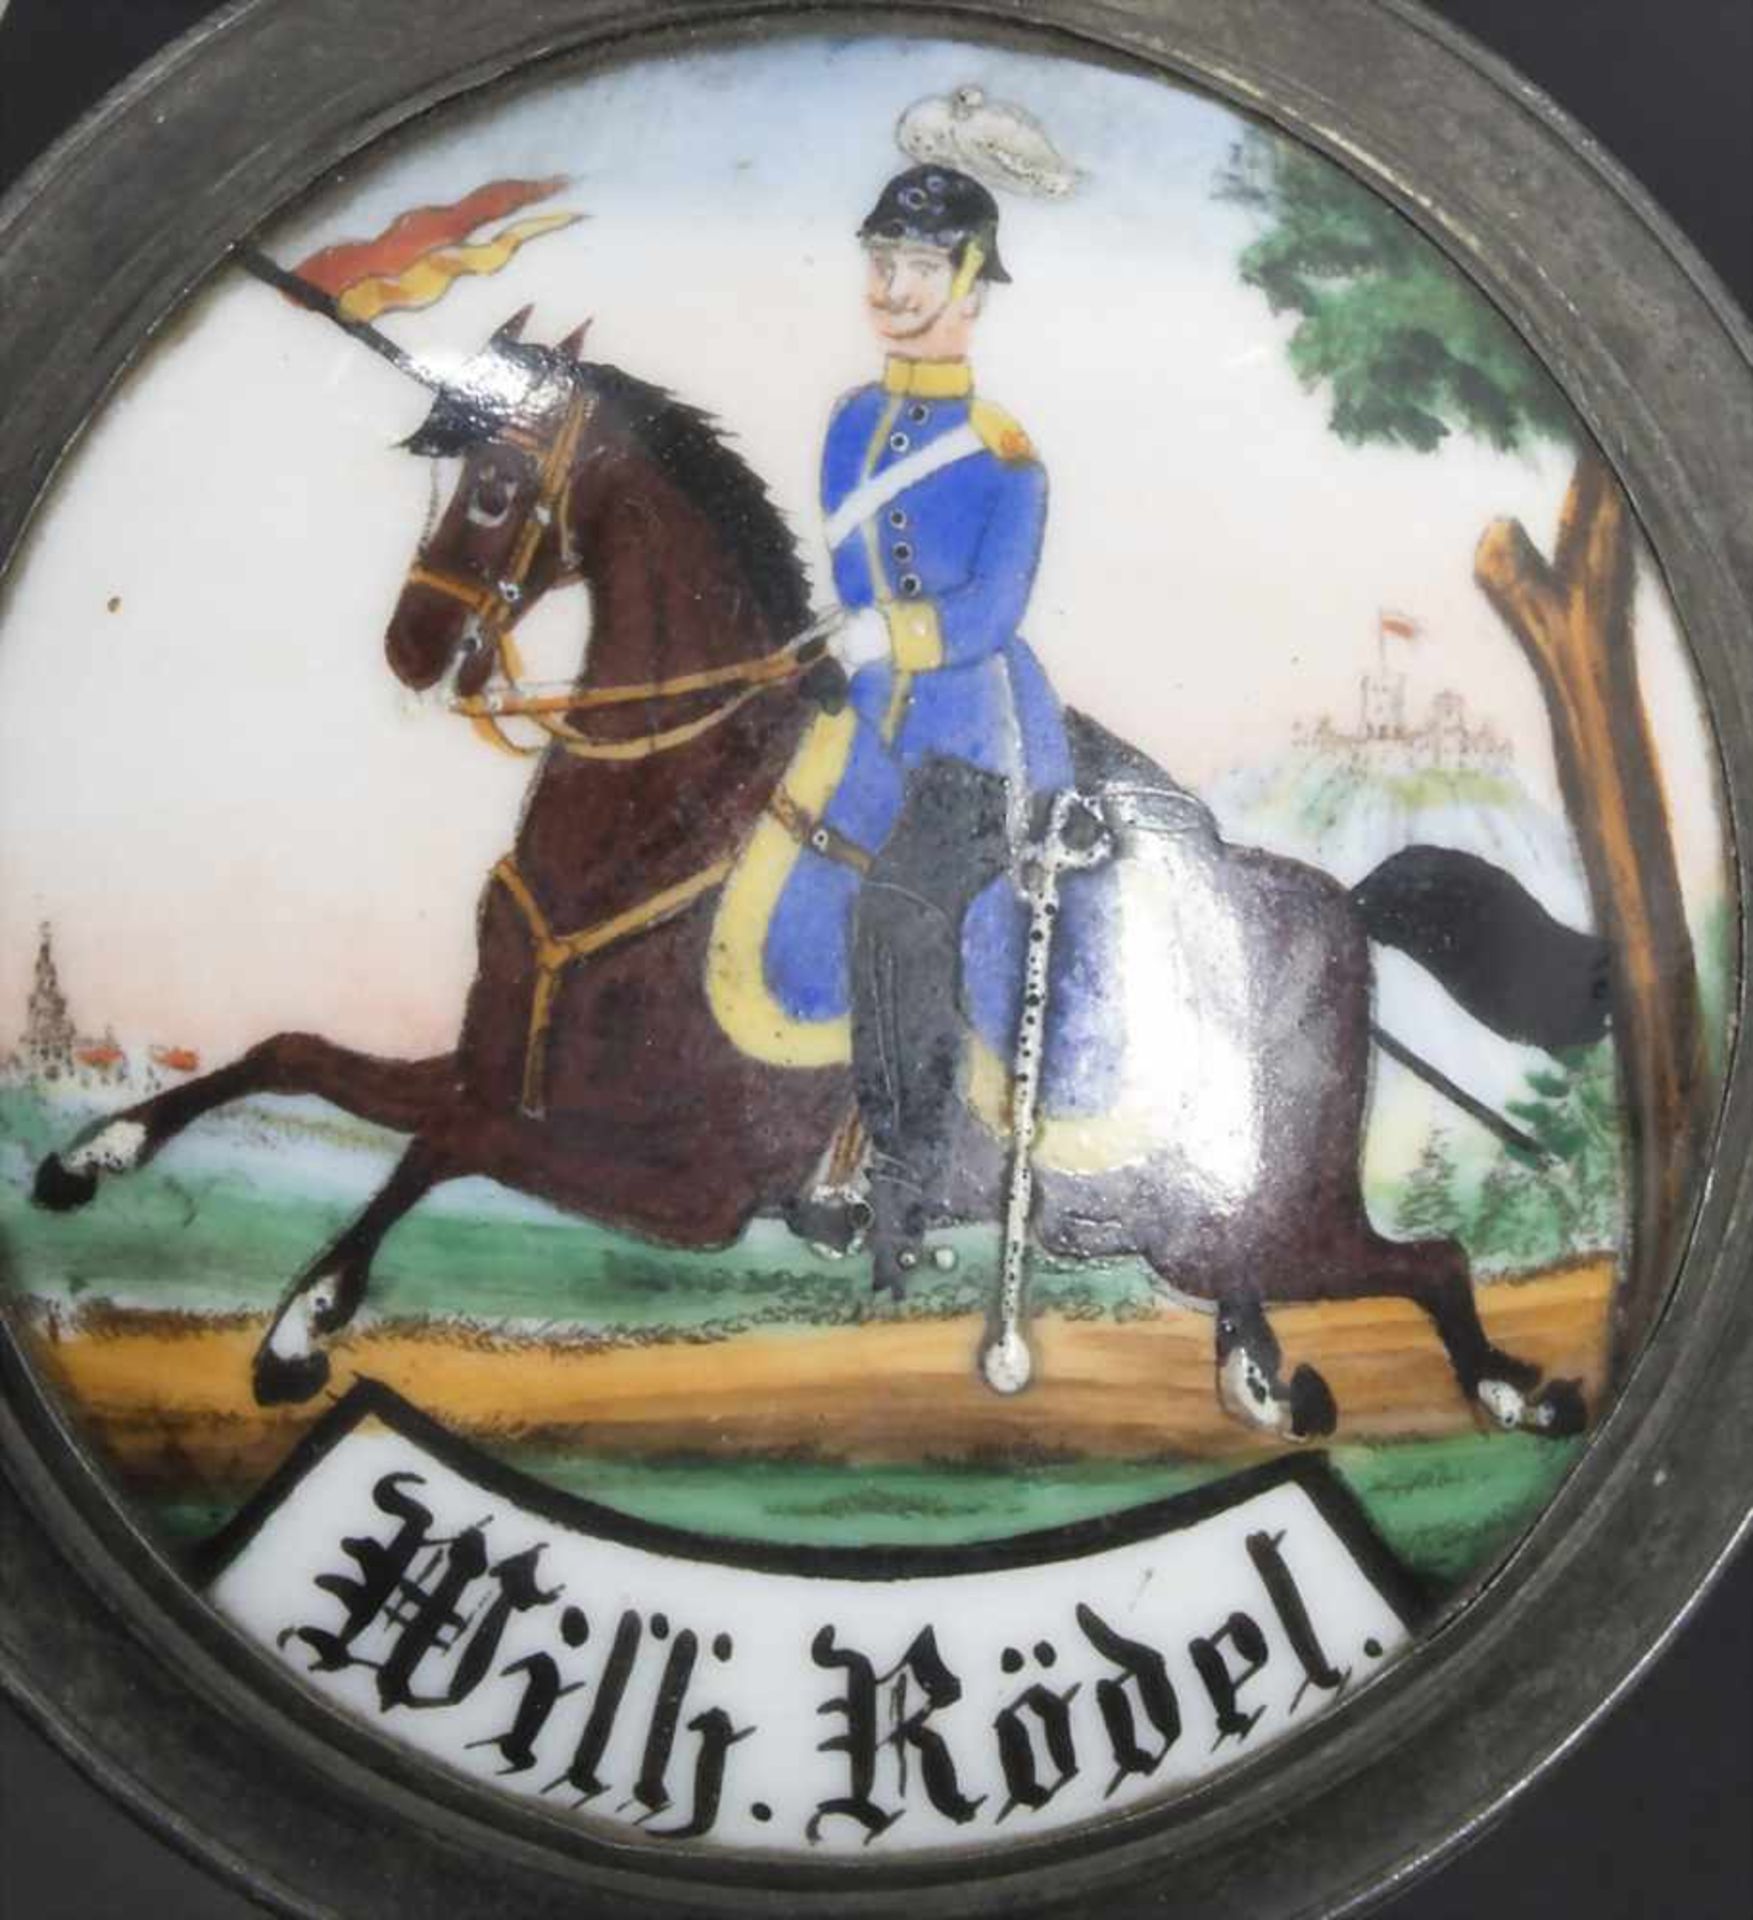 Reservistenkrug / A reservist beer mug, Schwetzingen, Baden, 1900Einheit: 2. Badisches Dragoner-